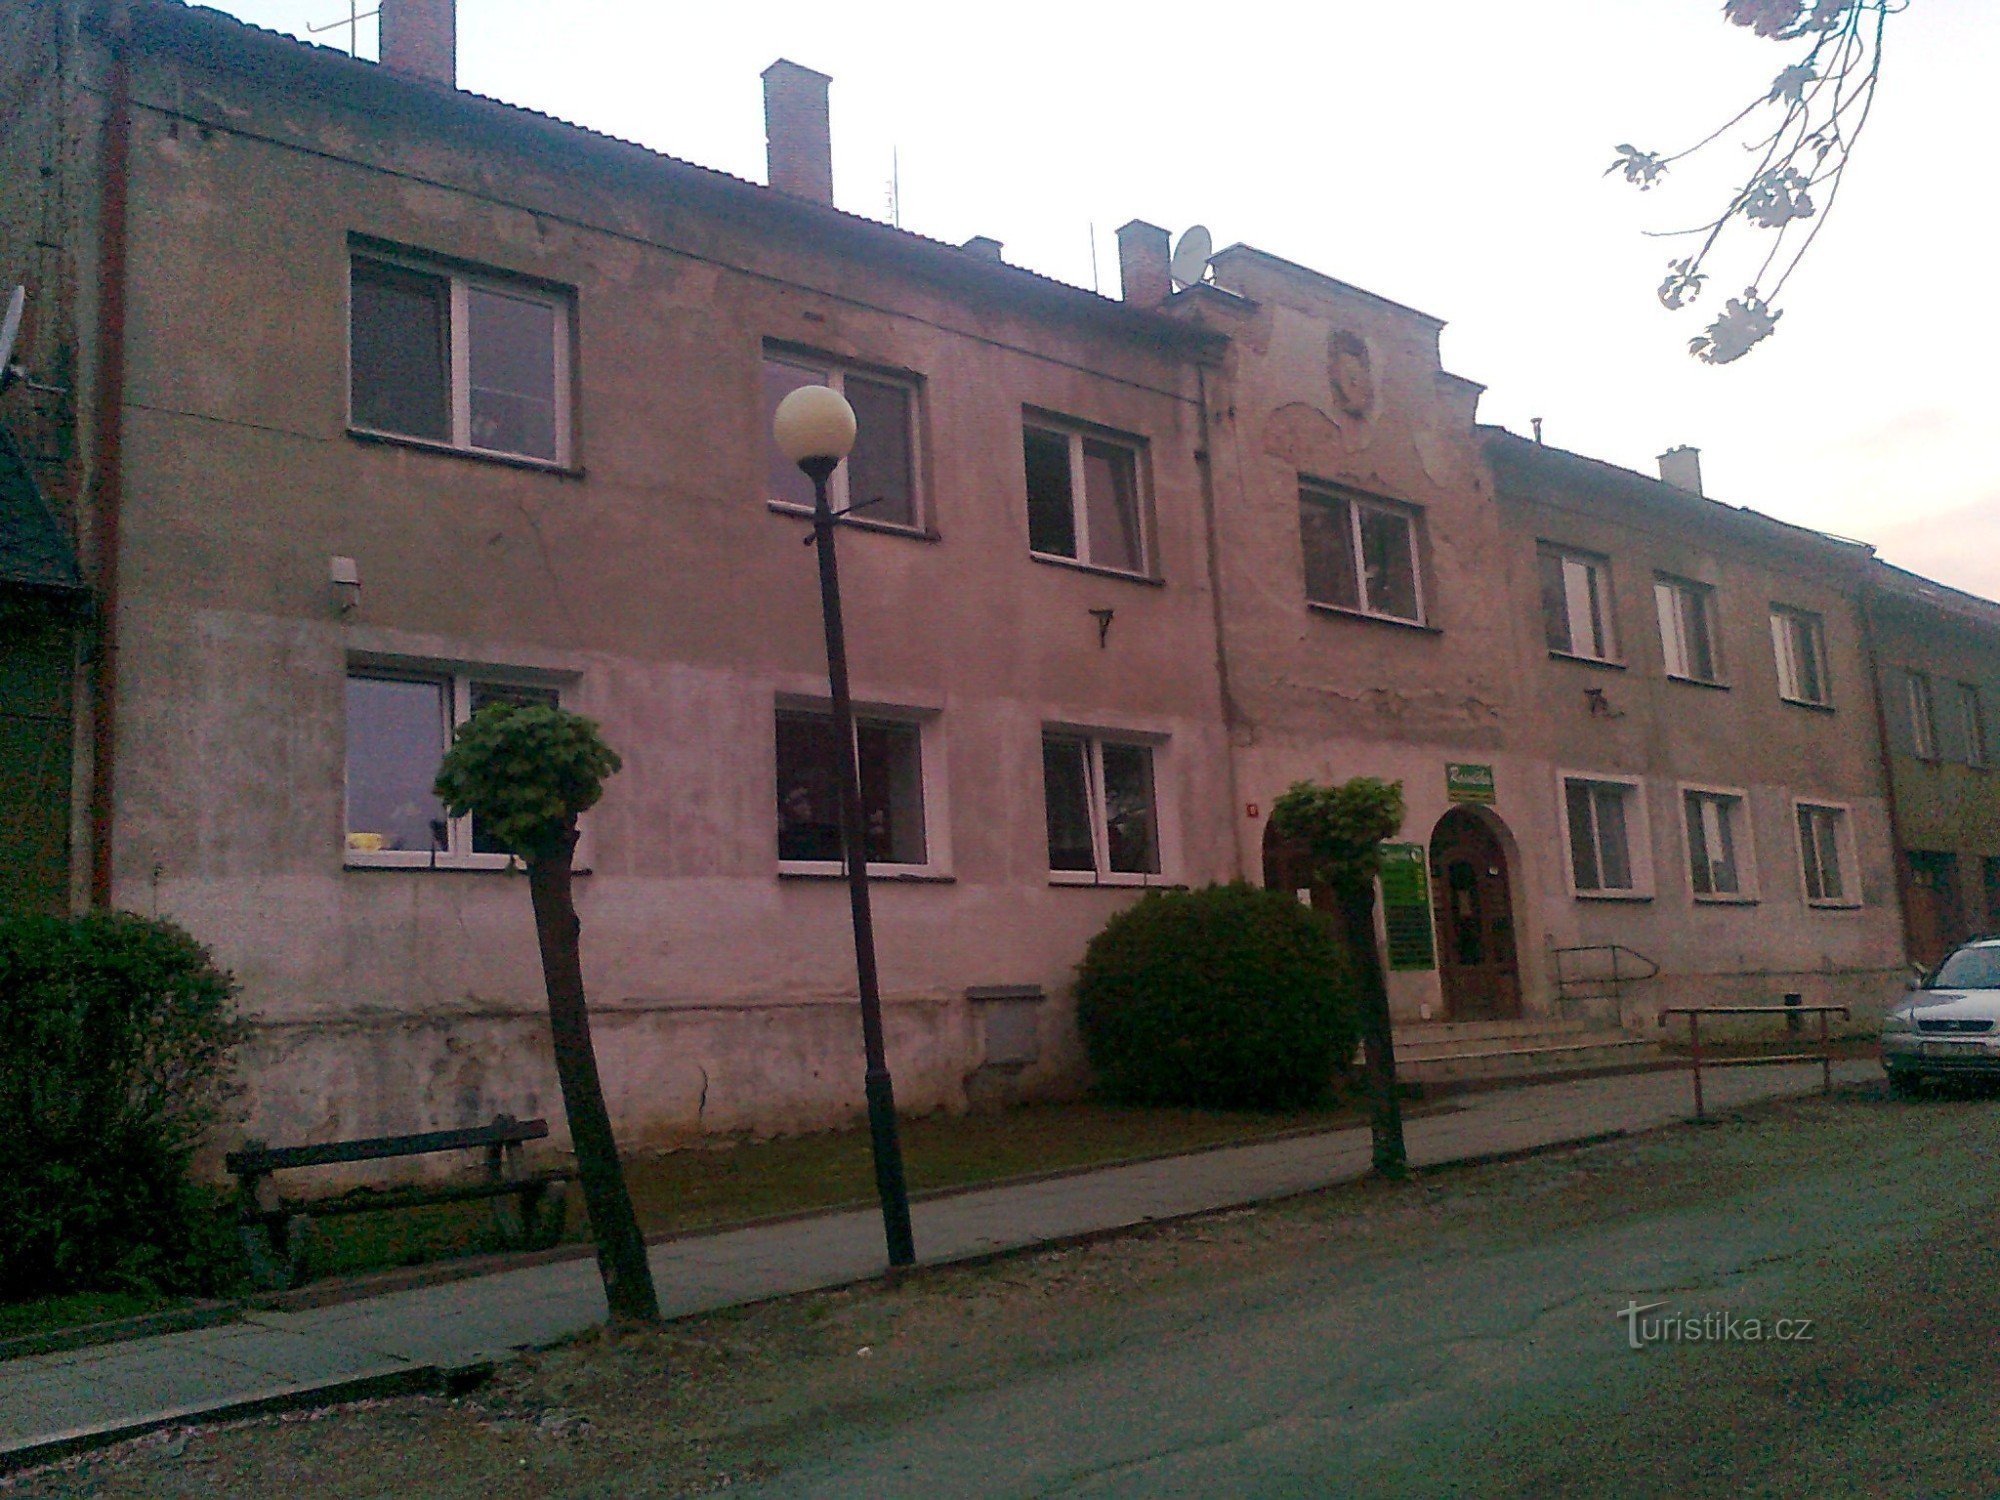 et hus ved Náměstí Míru nr. 51 kaldet MODRÁ HVĖZDA